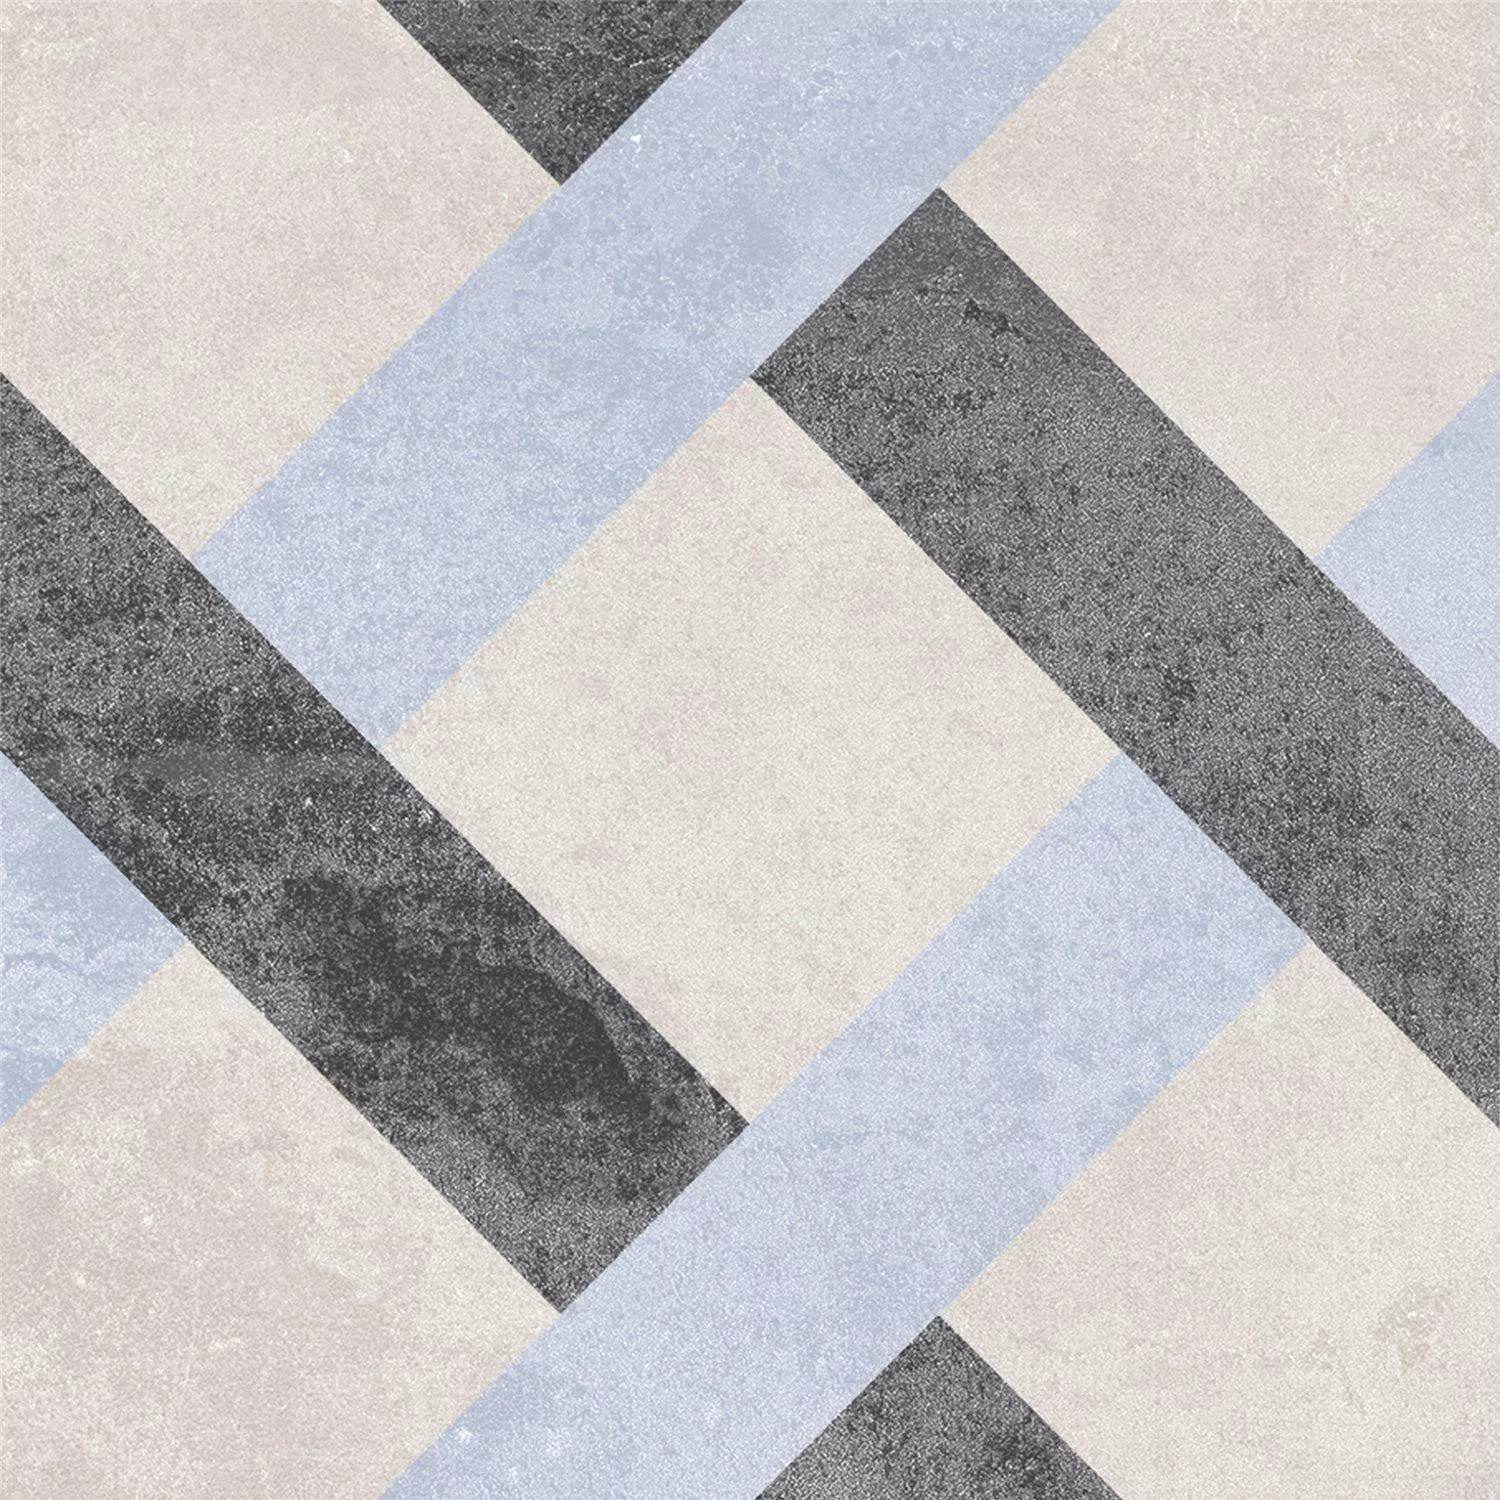 Sample Cement Tiles Retro Optic Gris Floor Tiles Pablo 18,6x18,6cm